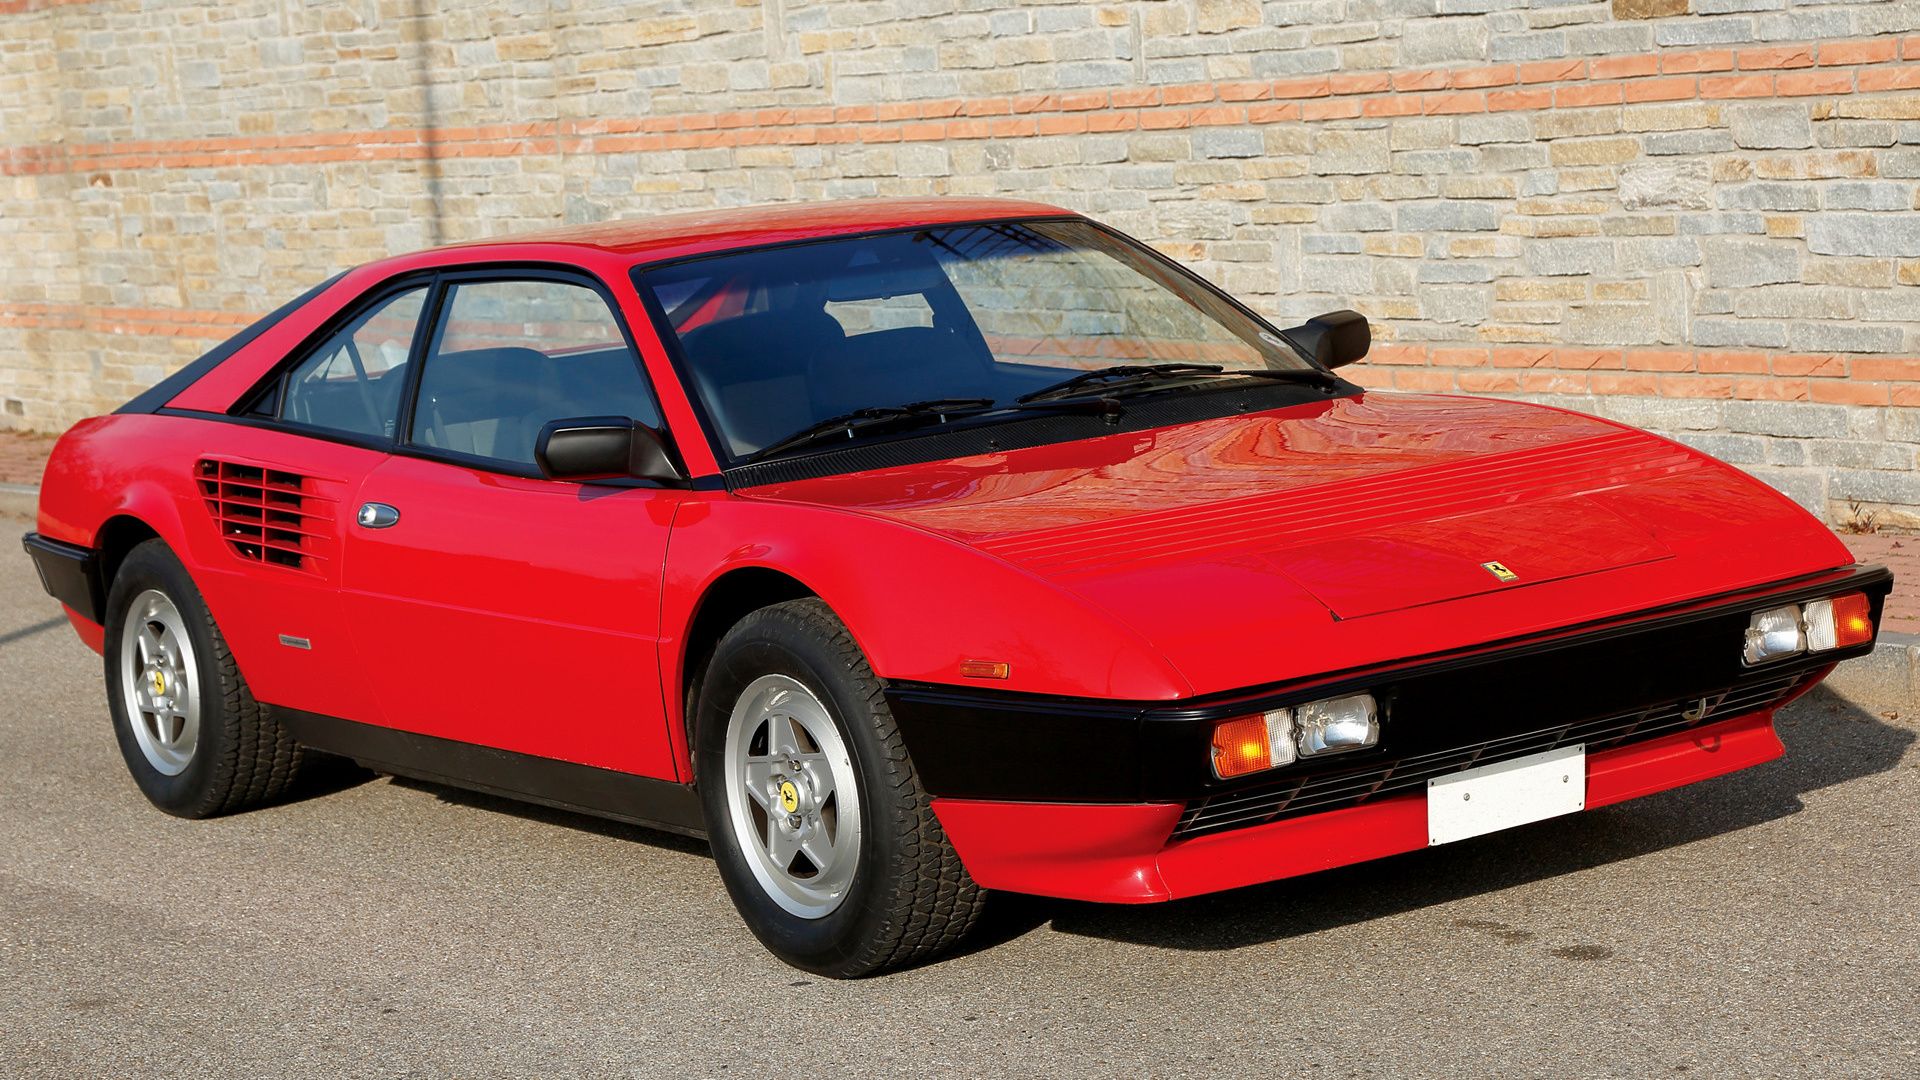 Ferrari Mondial - o caso do carro desaparecido por mais de 20 anos